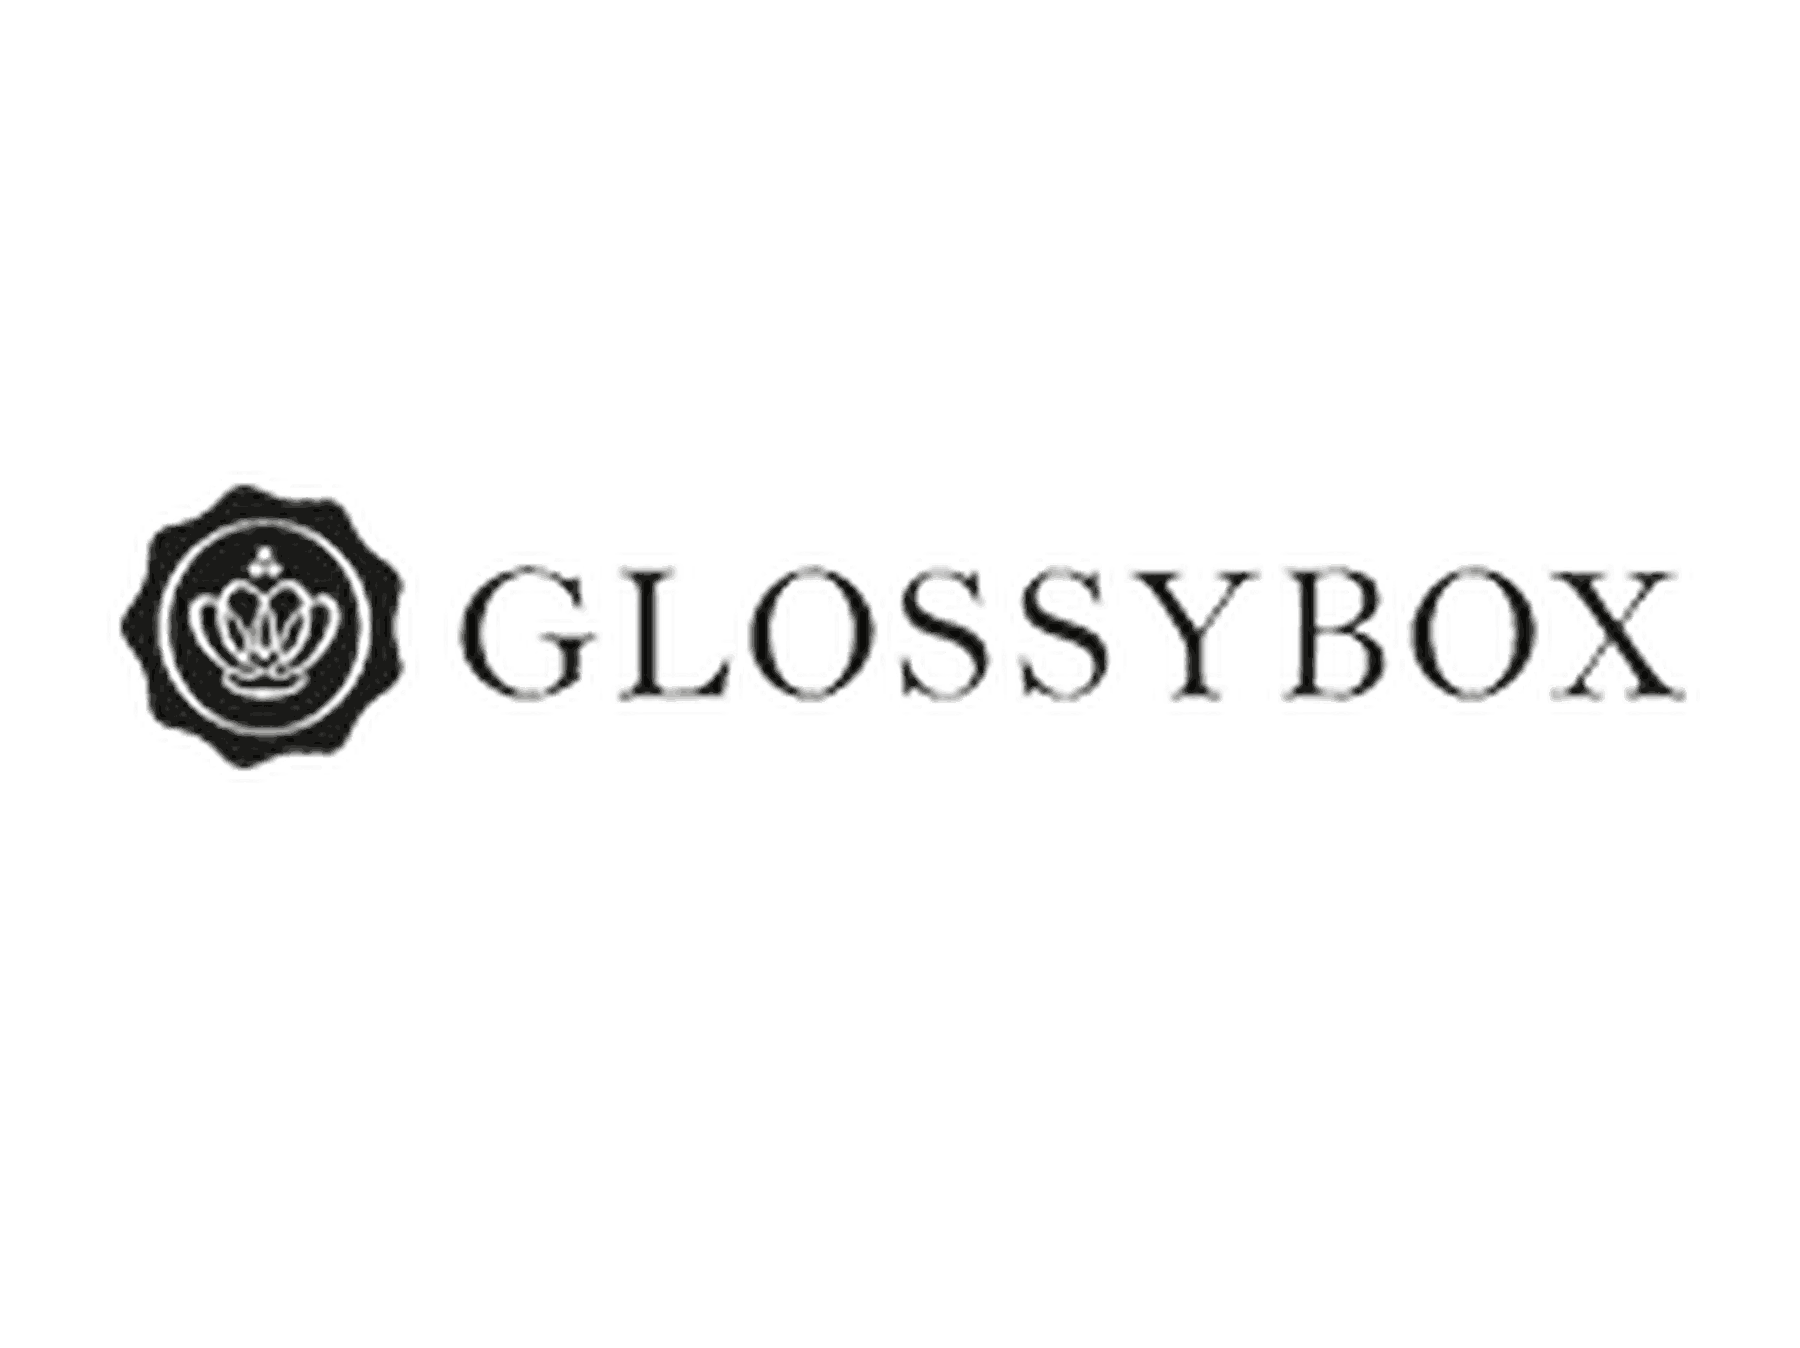 Glossybox Rabattcodes